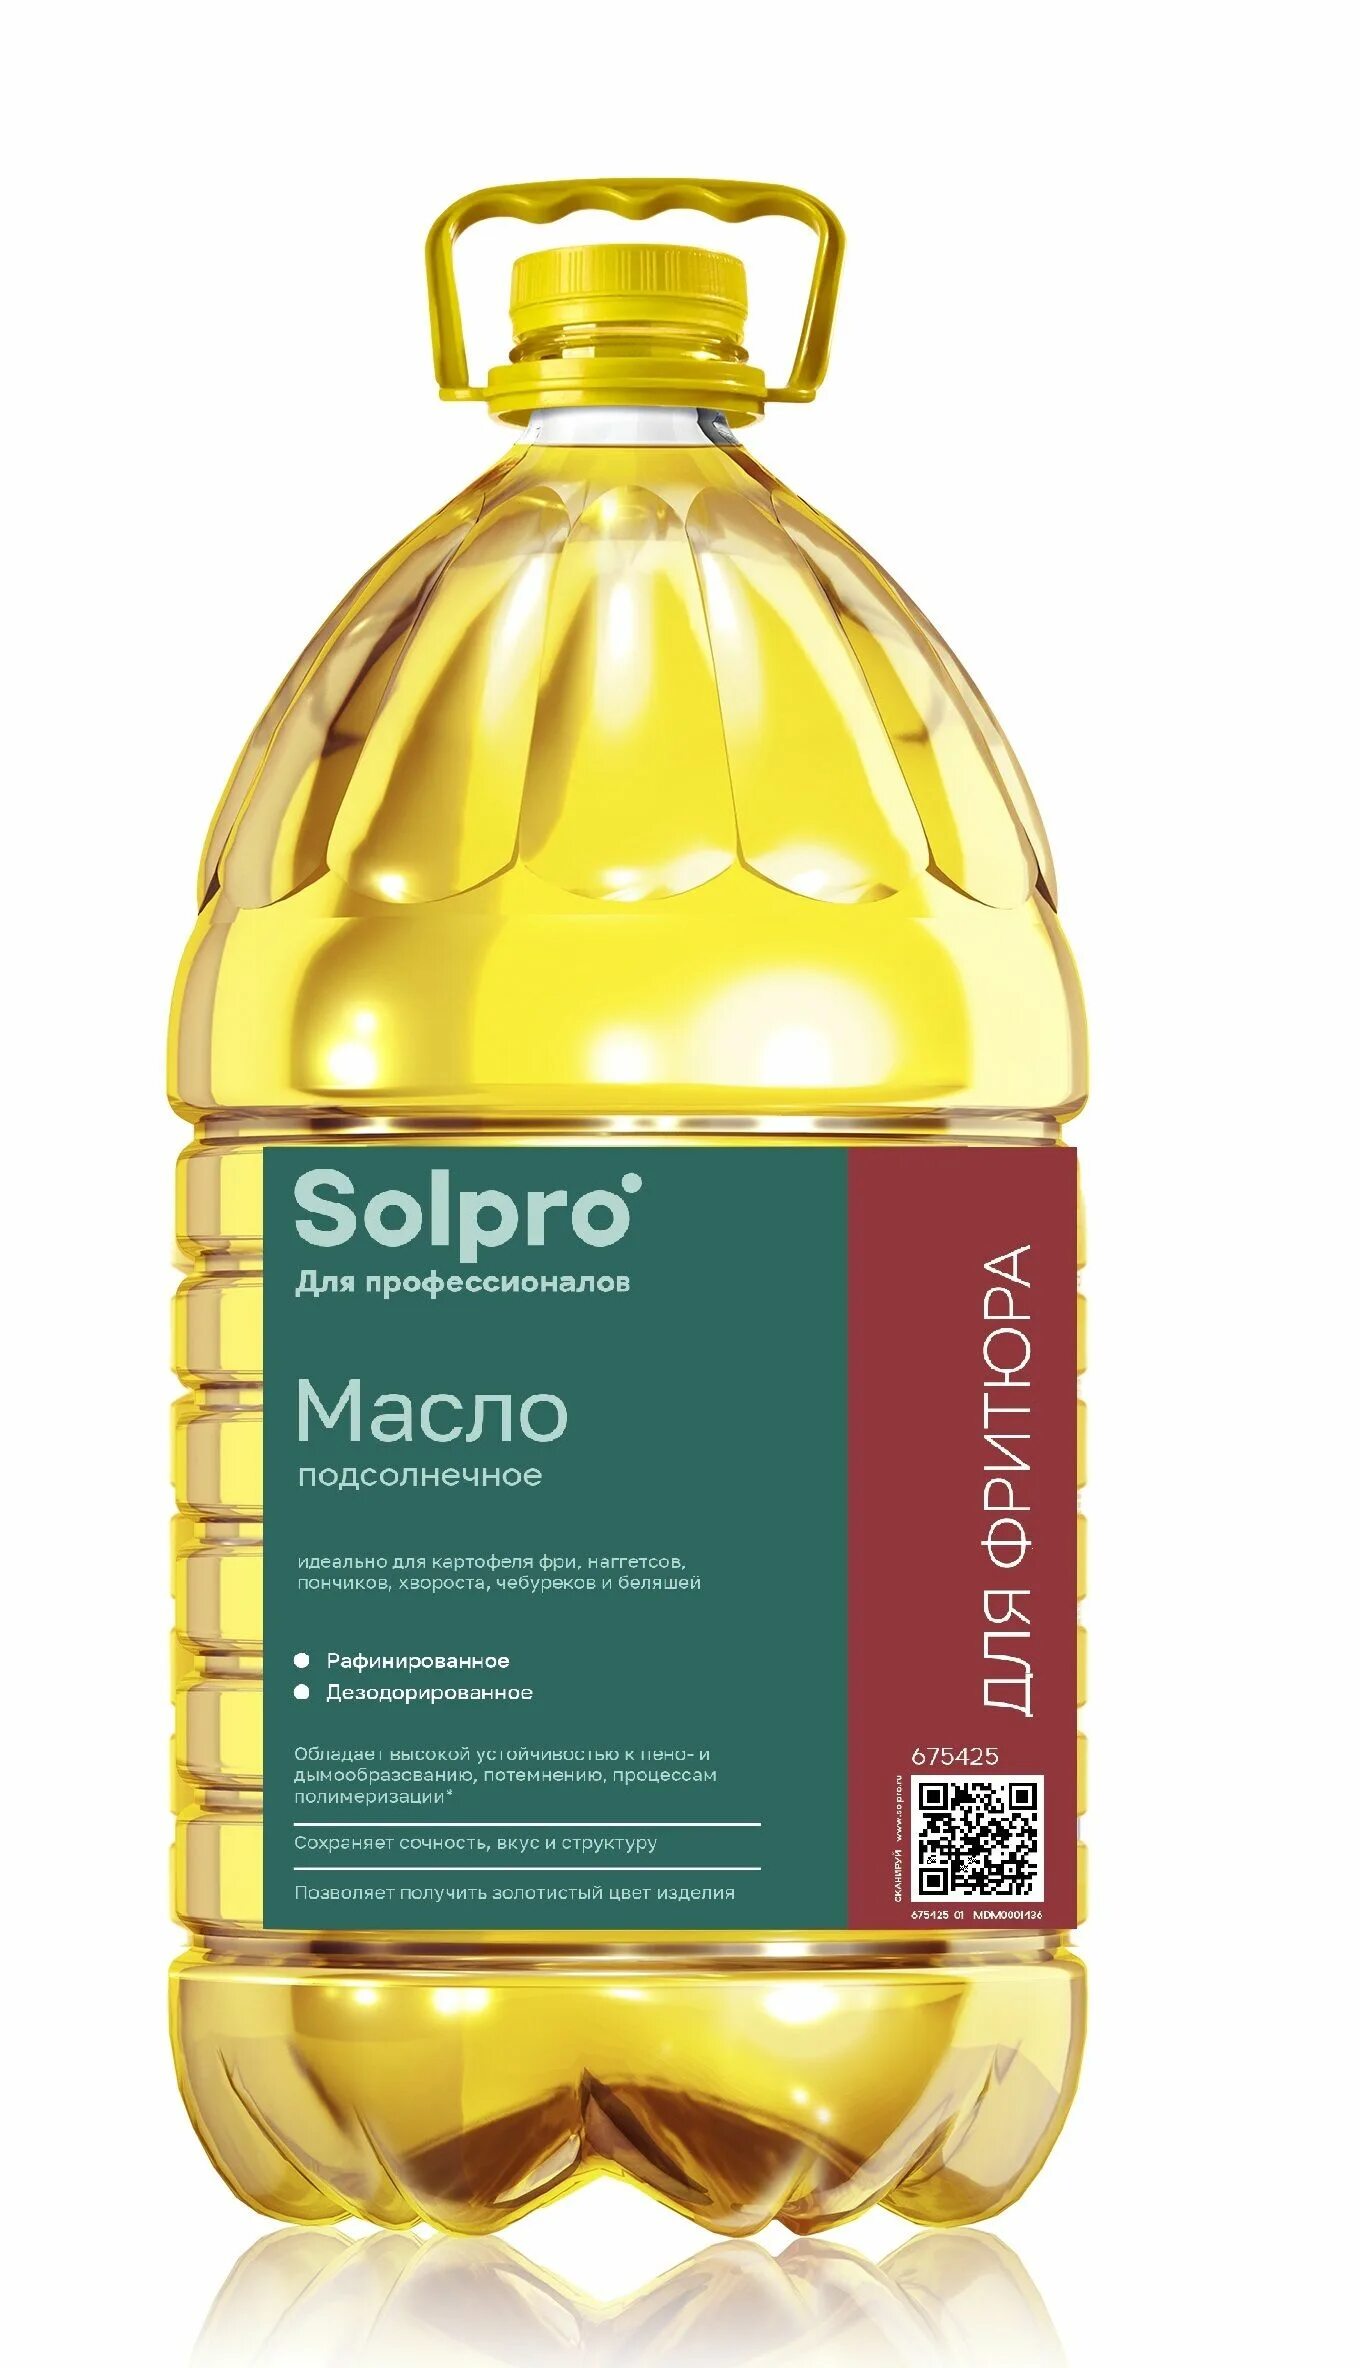 Масло подсолнечное "Solpro" 5л. Масло фритюрное 5л. Масло для фритюра СОЛПРО. Solpro масло 5 литров.